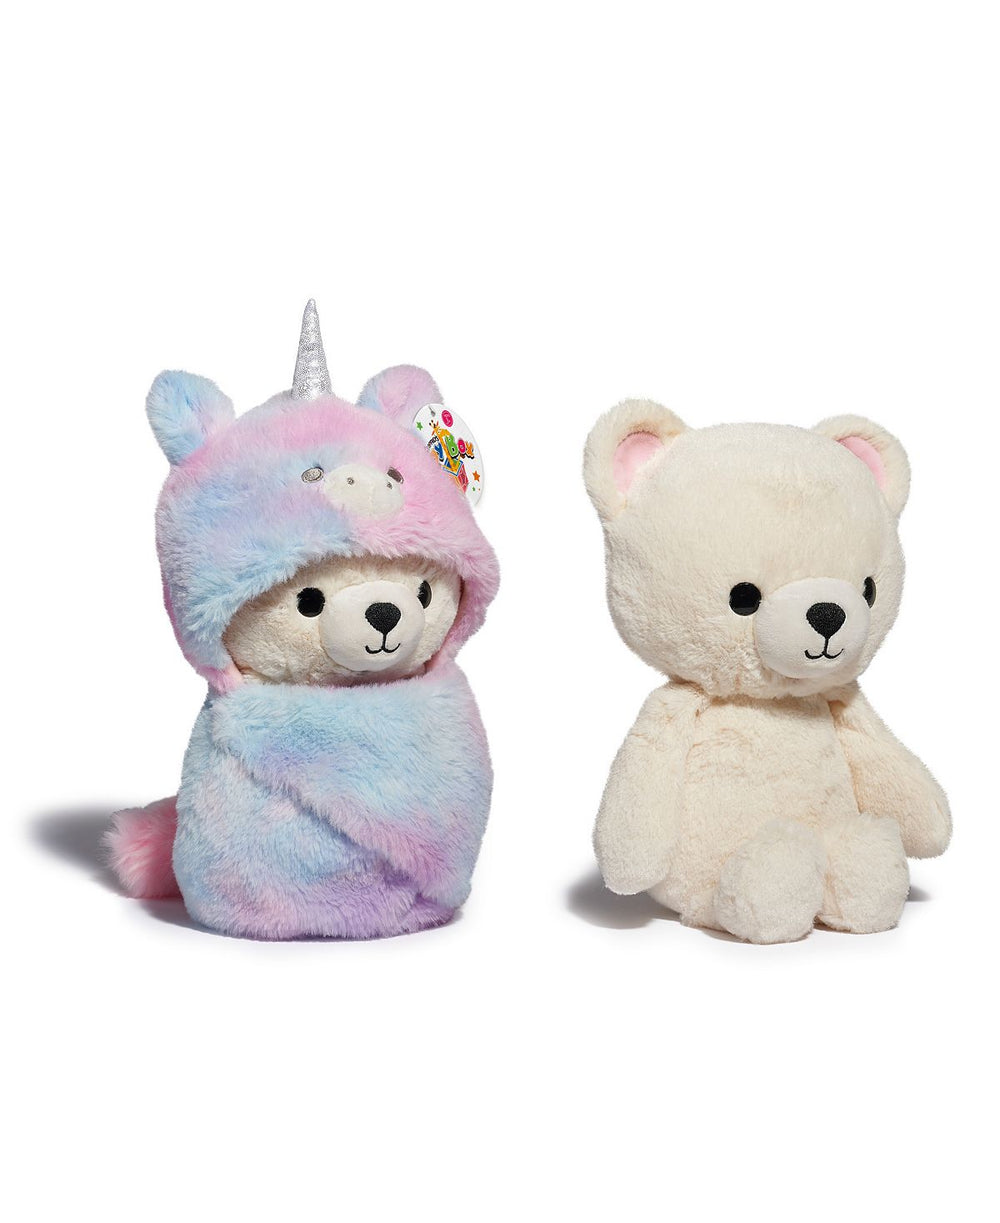 Geoffrey's Toy Box 10 inch Cozie Friends Unicorn Teddy Bear - Exclusive to Macy's